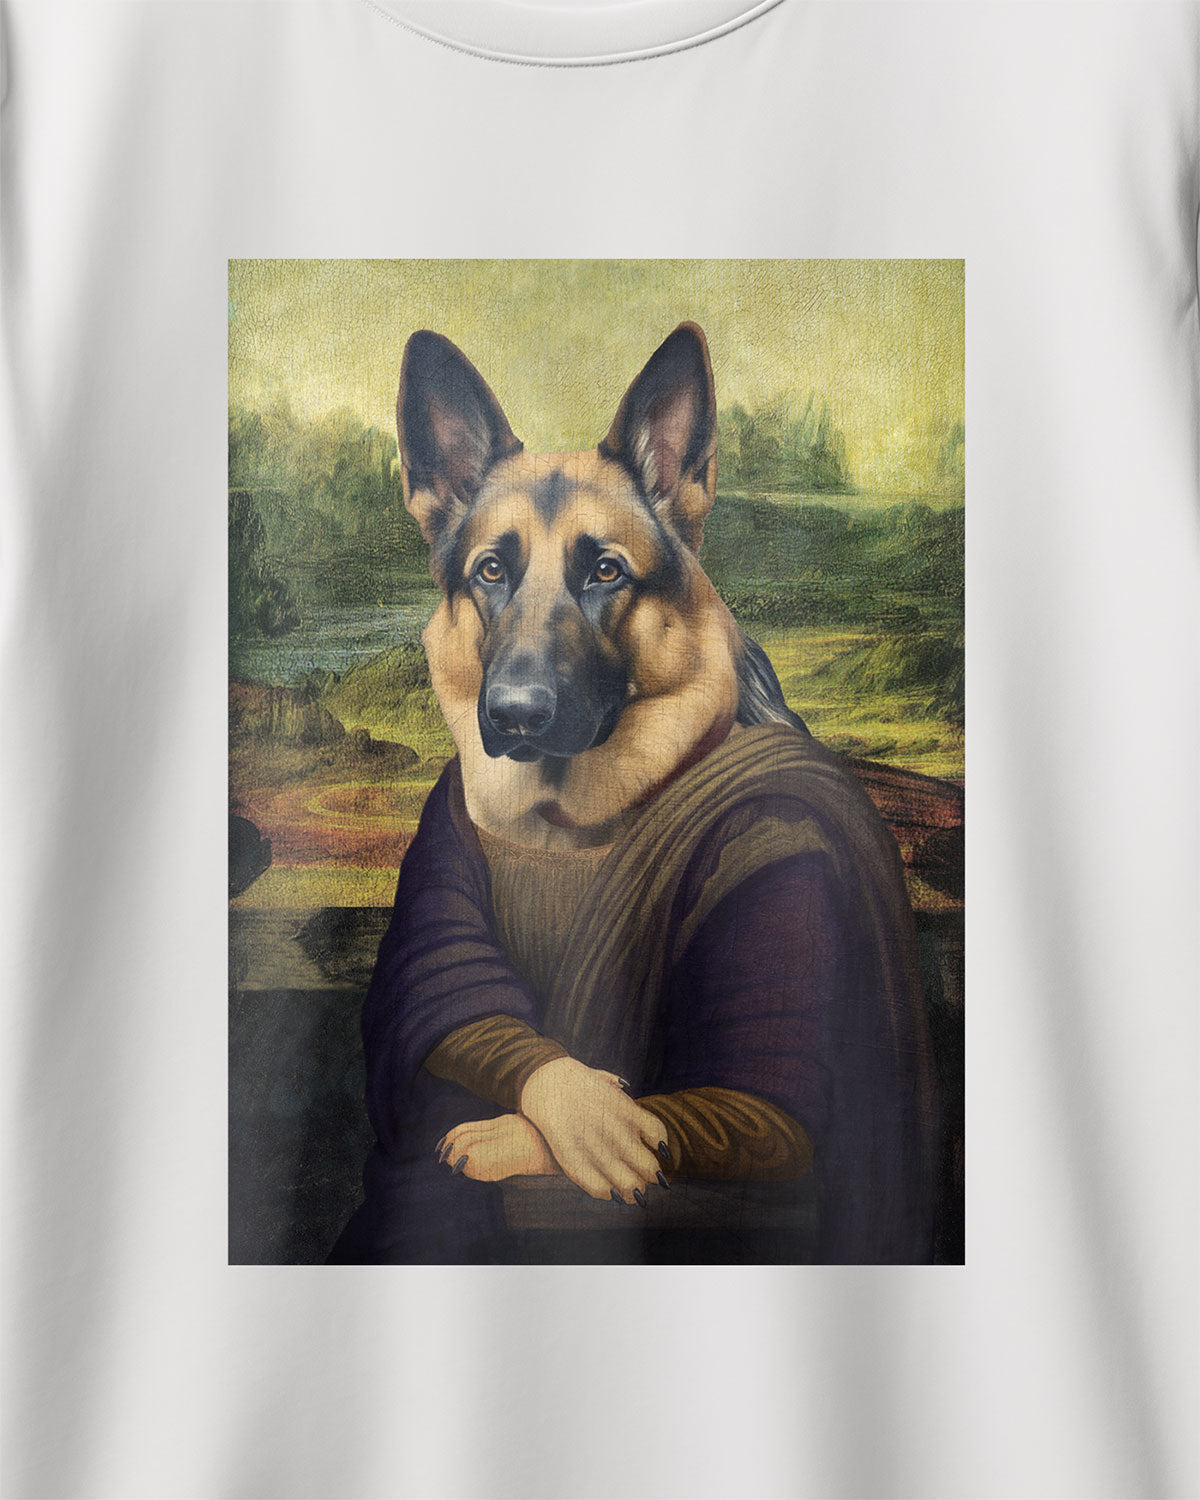 Mona Lisa German Shepherd T-Shirt